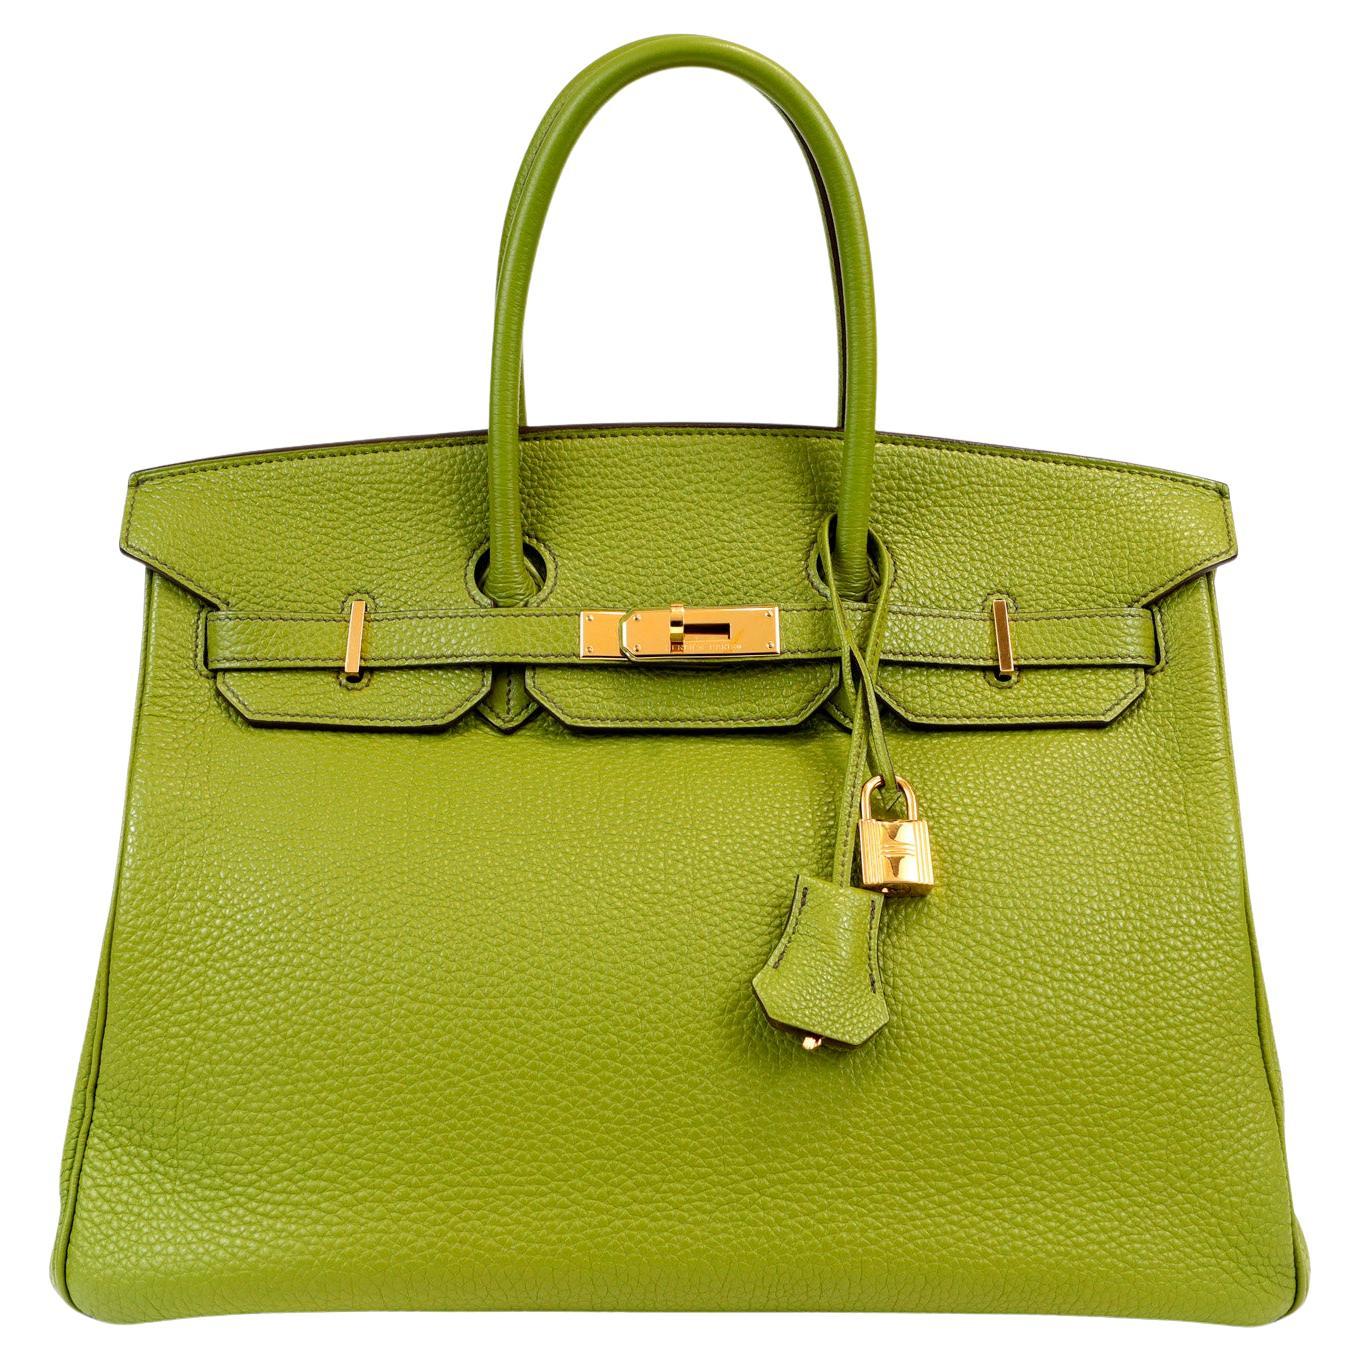 Hermès Green Togo 35 cm Birkin with Gold Hardware